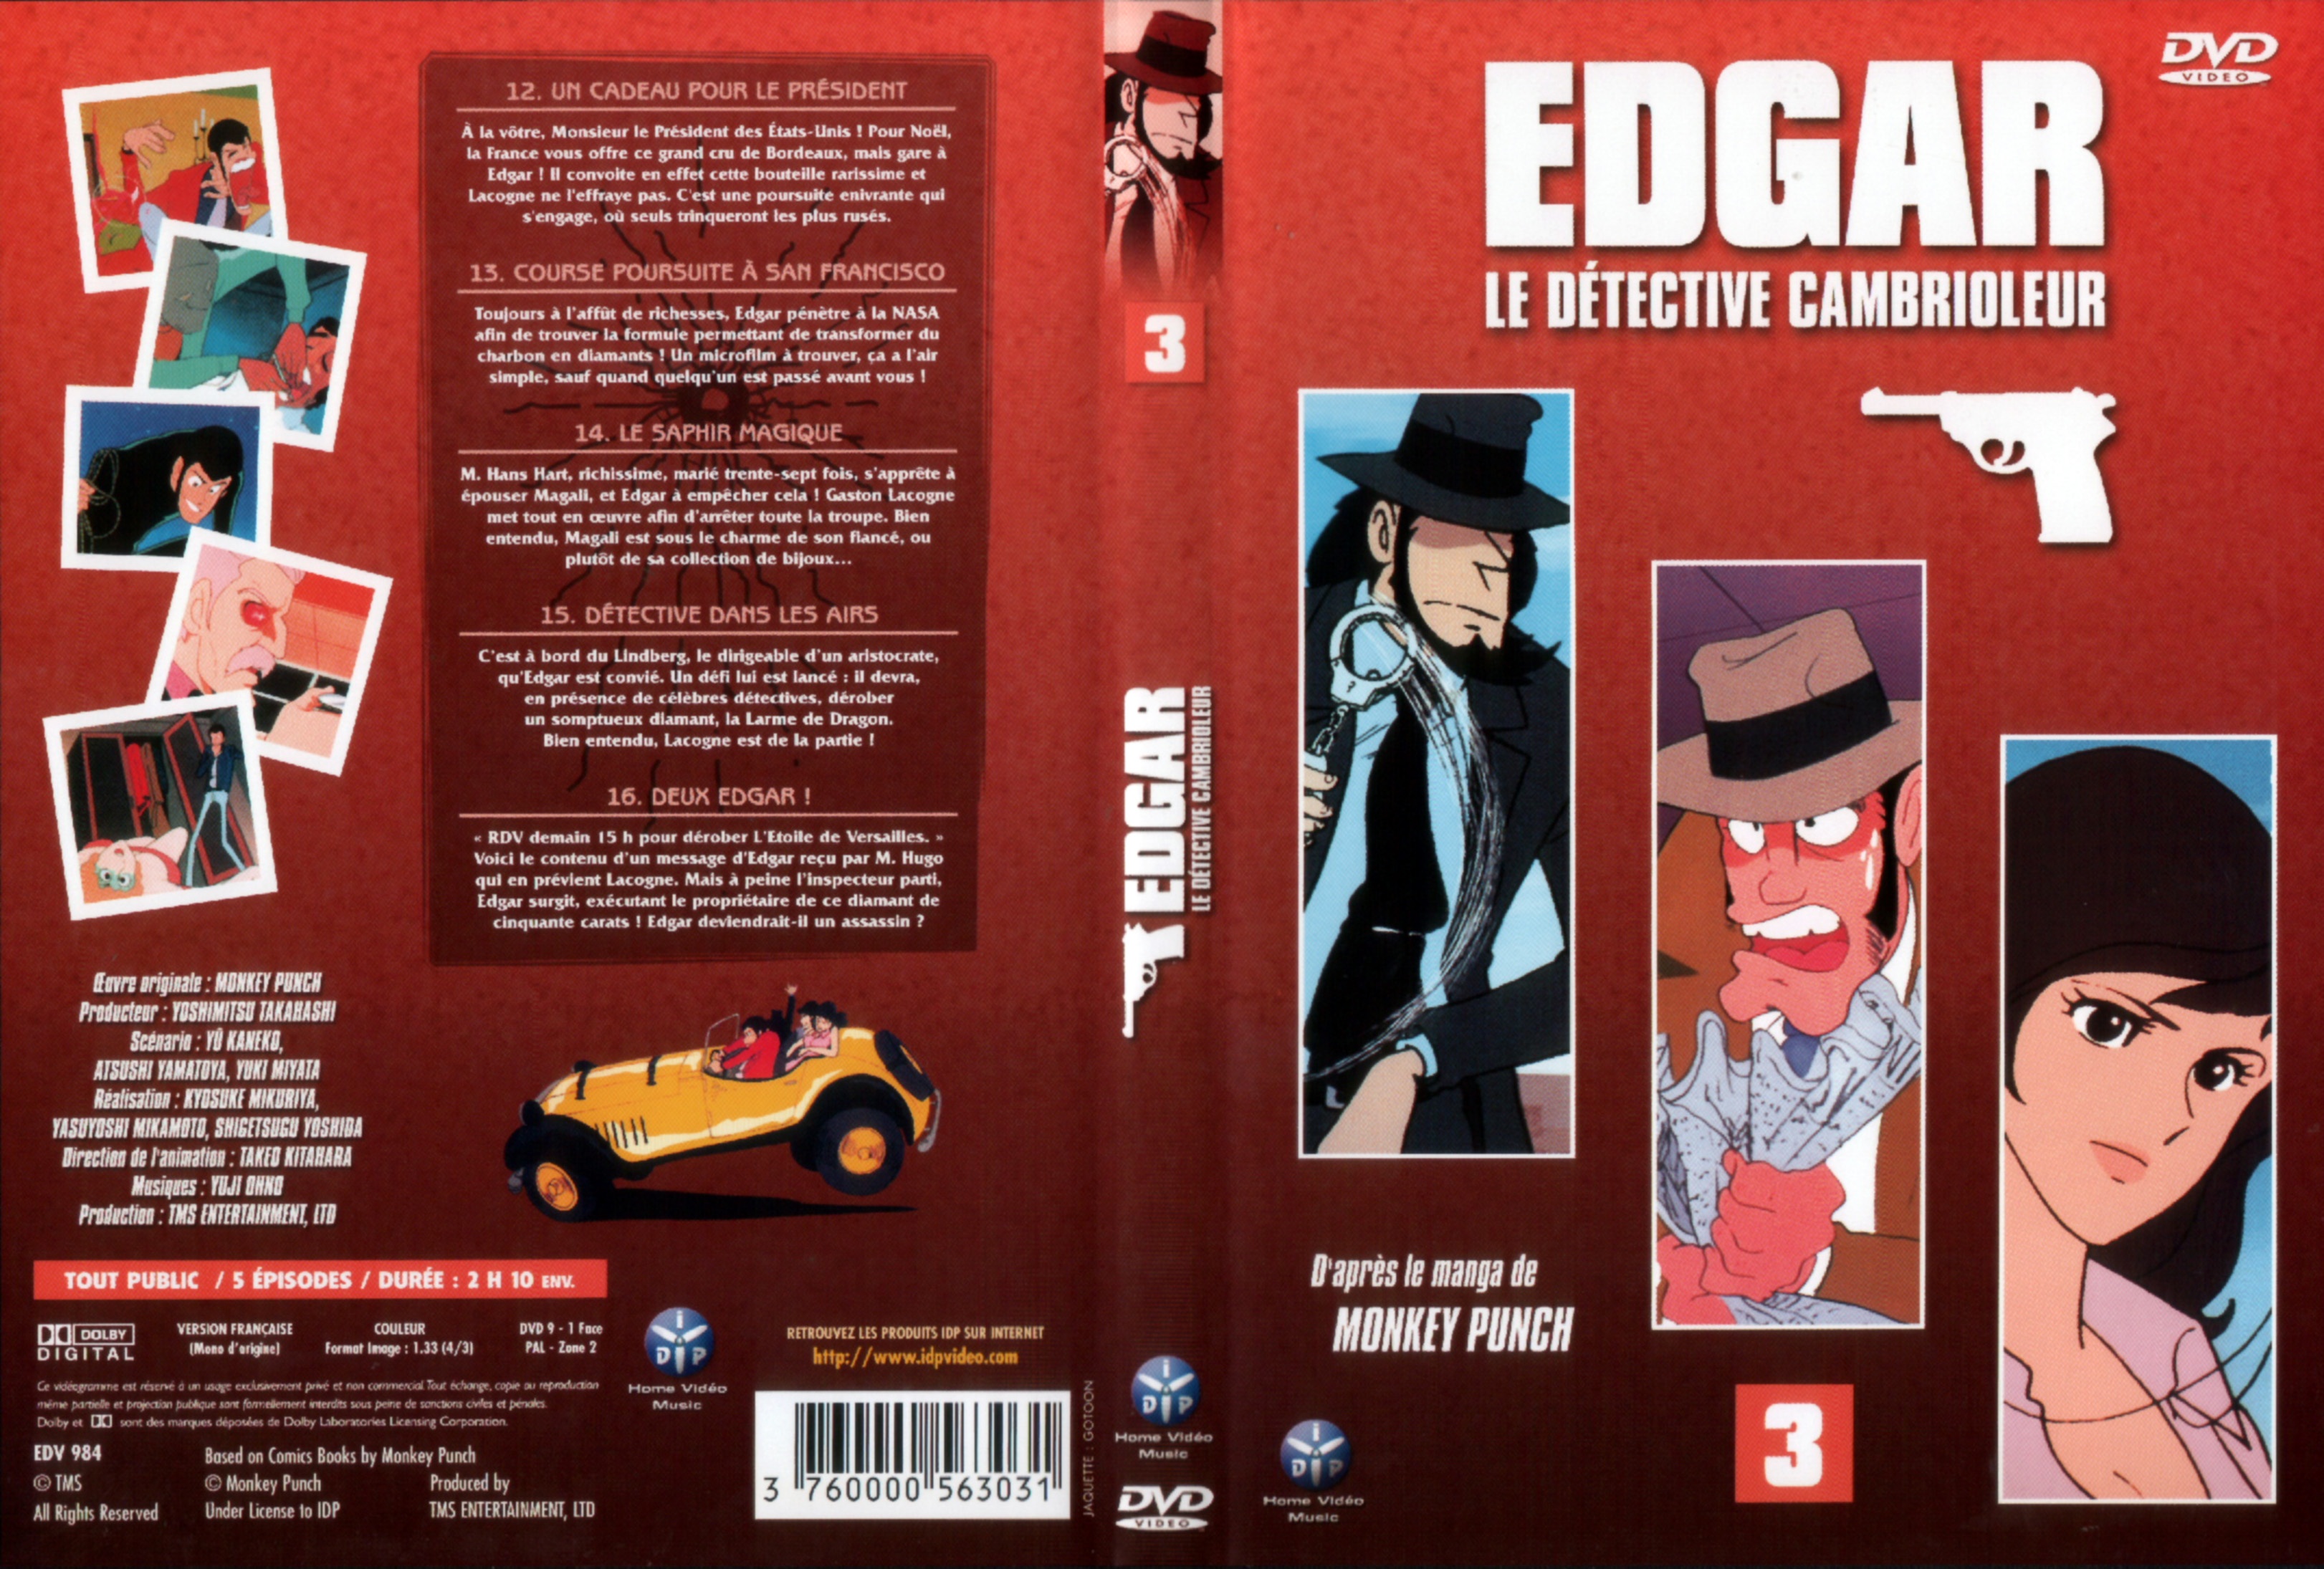 Jaquette DVD Edgar le detective cambrioleur DVD 03